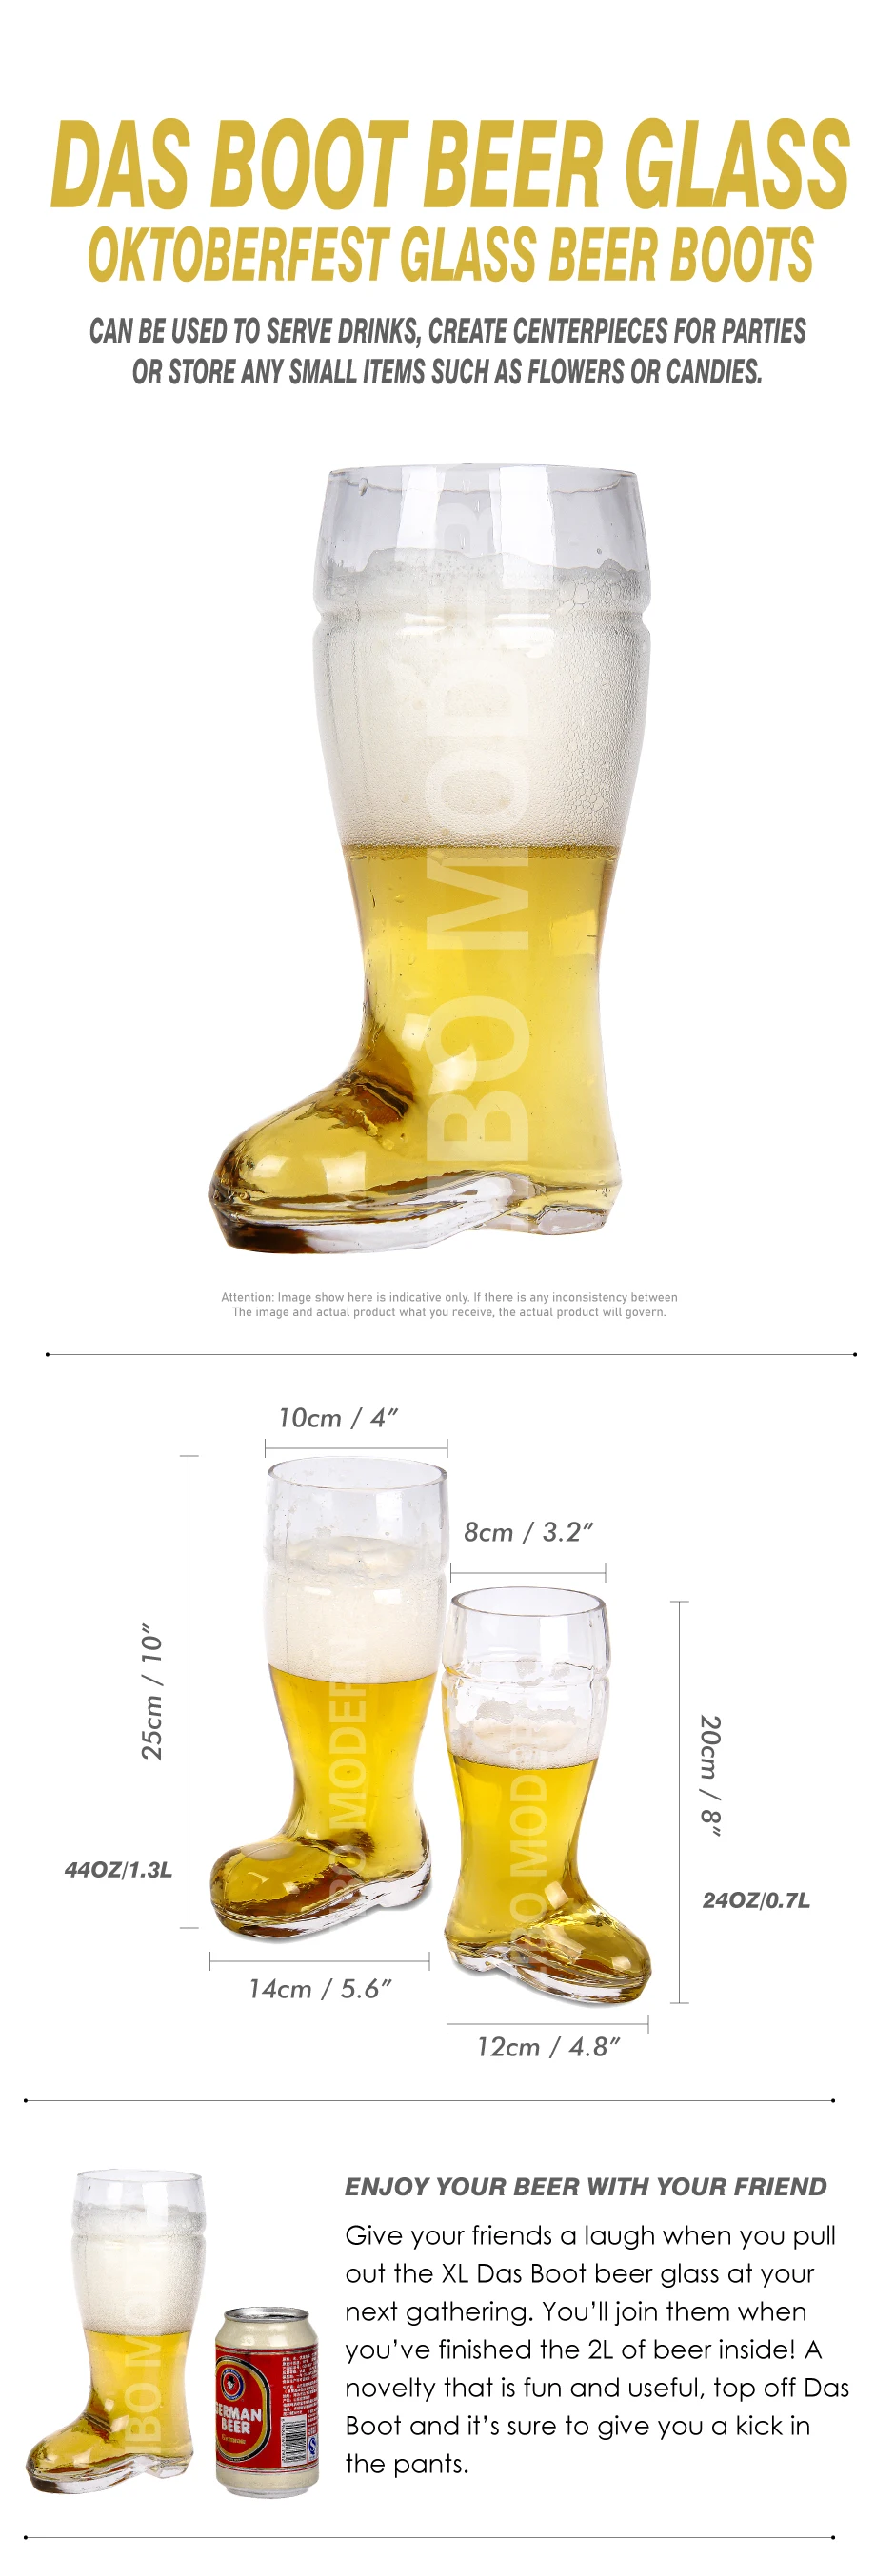 44 24 Oz Das Boot Beer Glass Oktoberfest Glass Beer Boots Buy Beer Glassesoktoberfest Glass